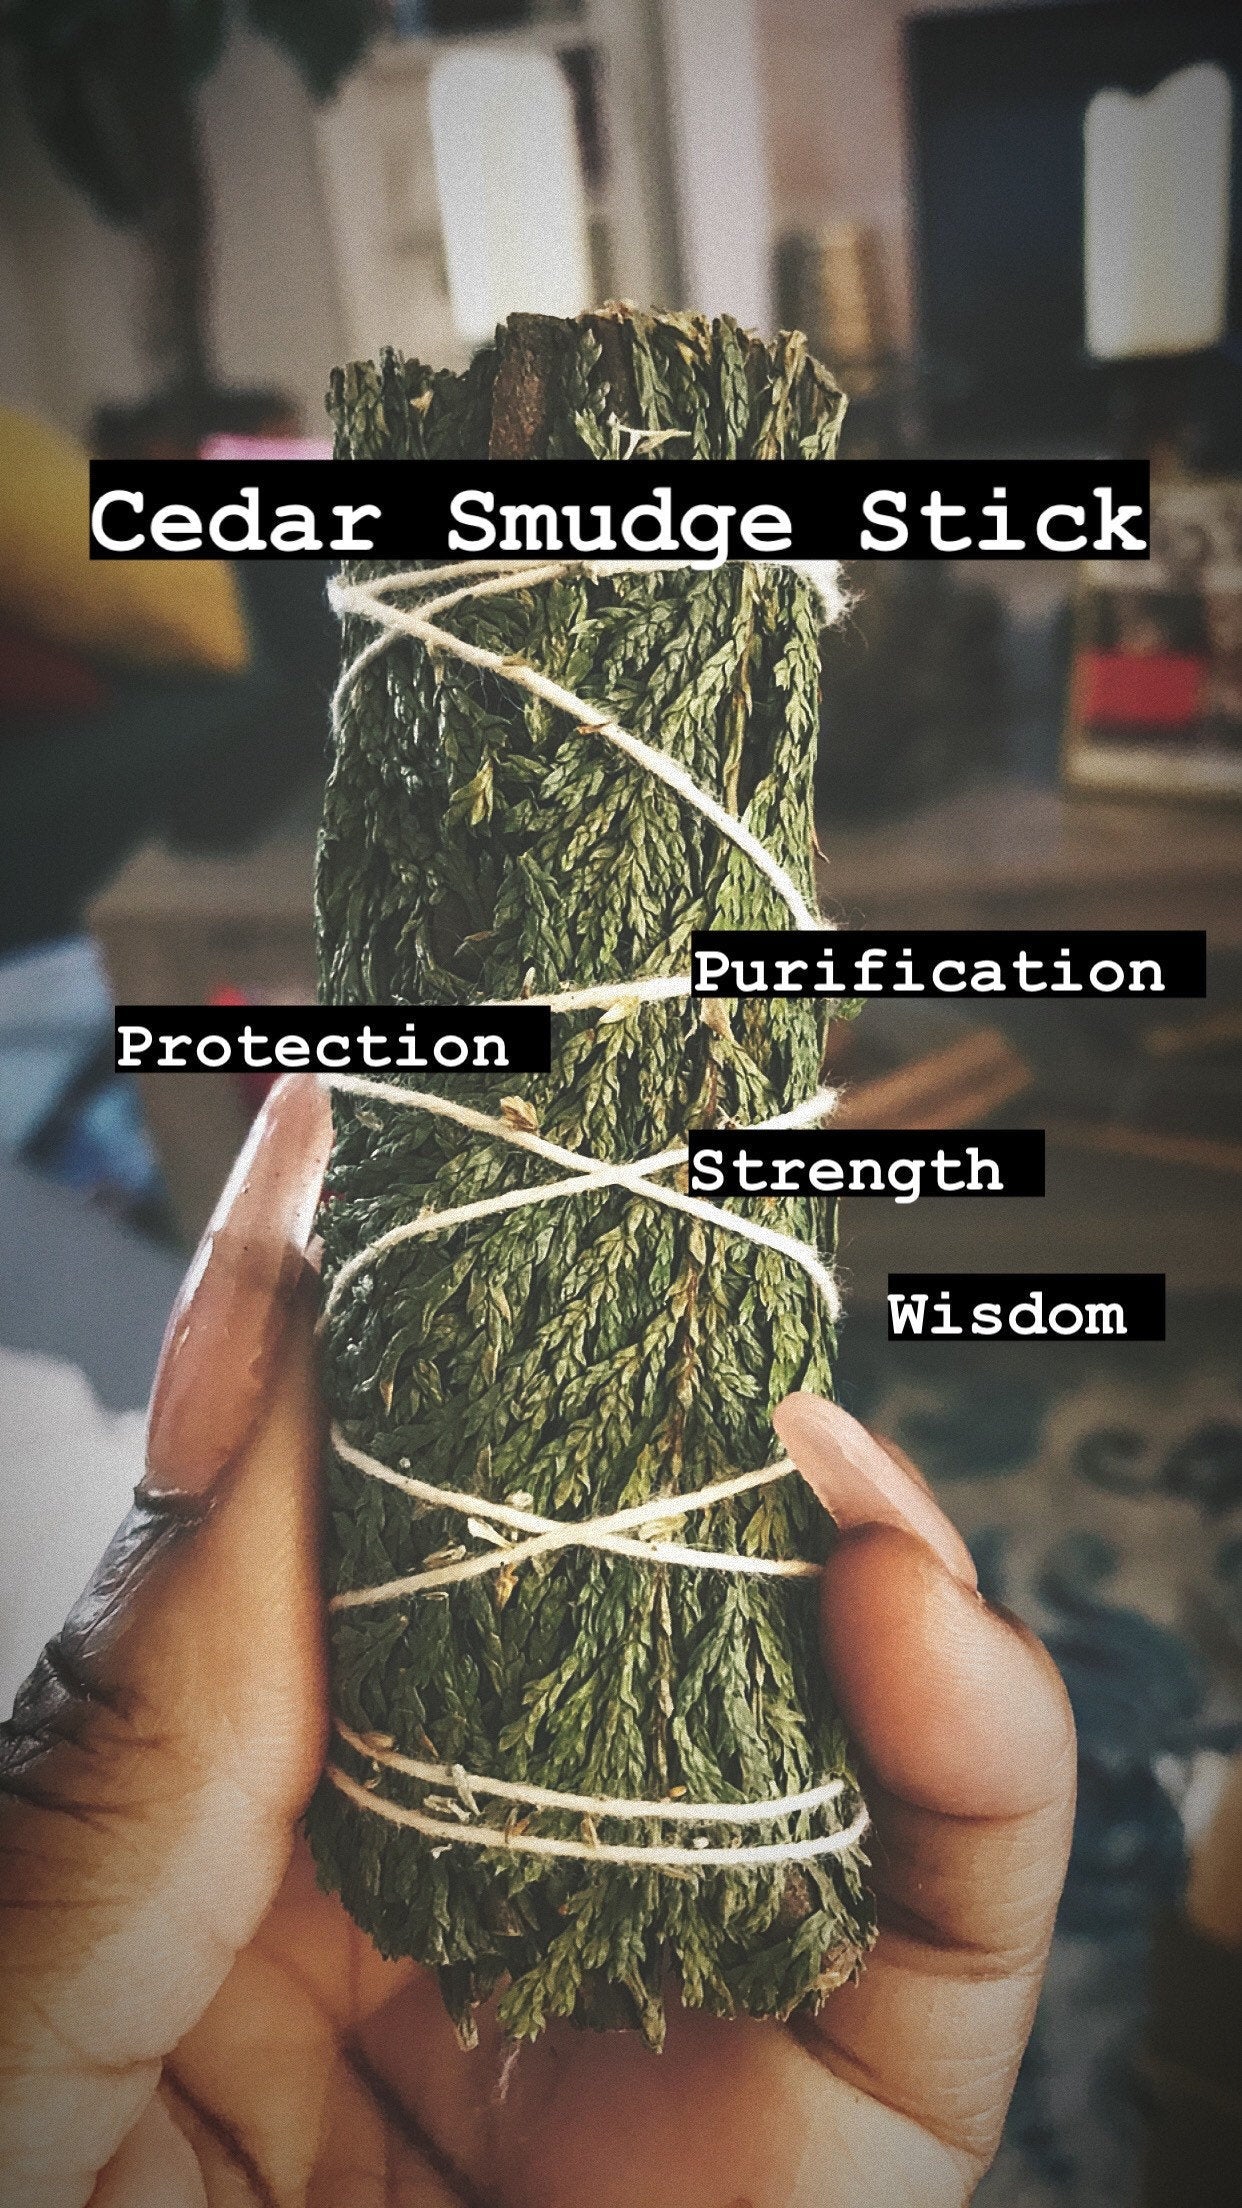 Cedar Smudge Stick: Purification, Wisdom